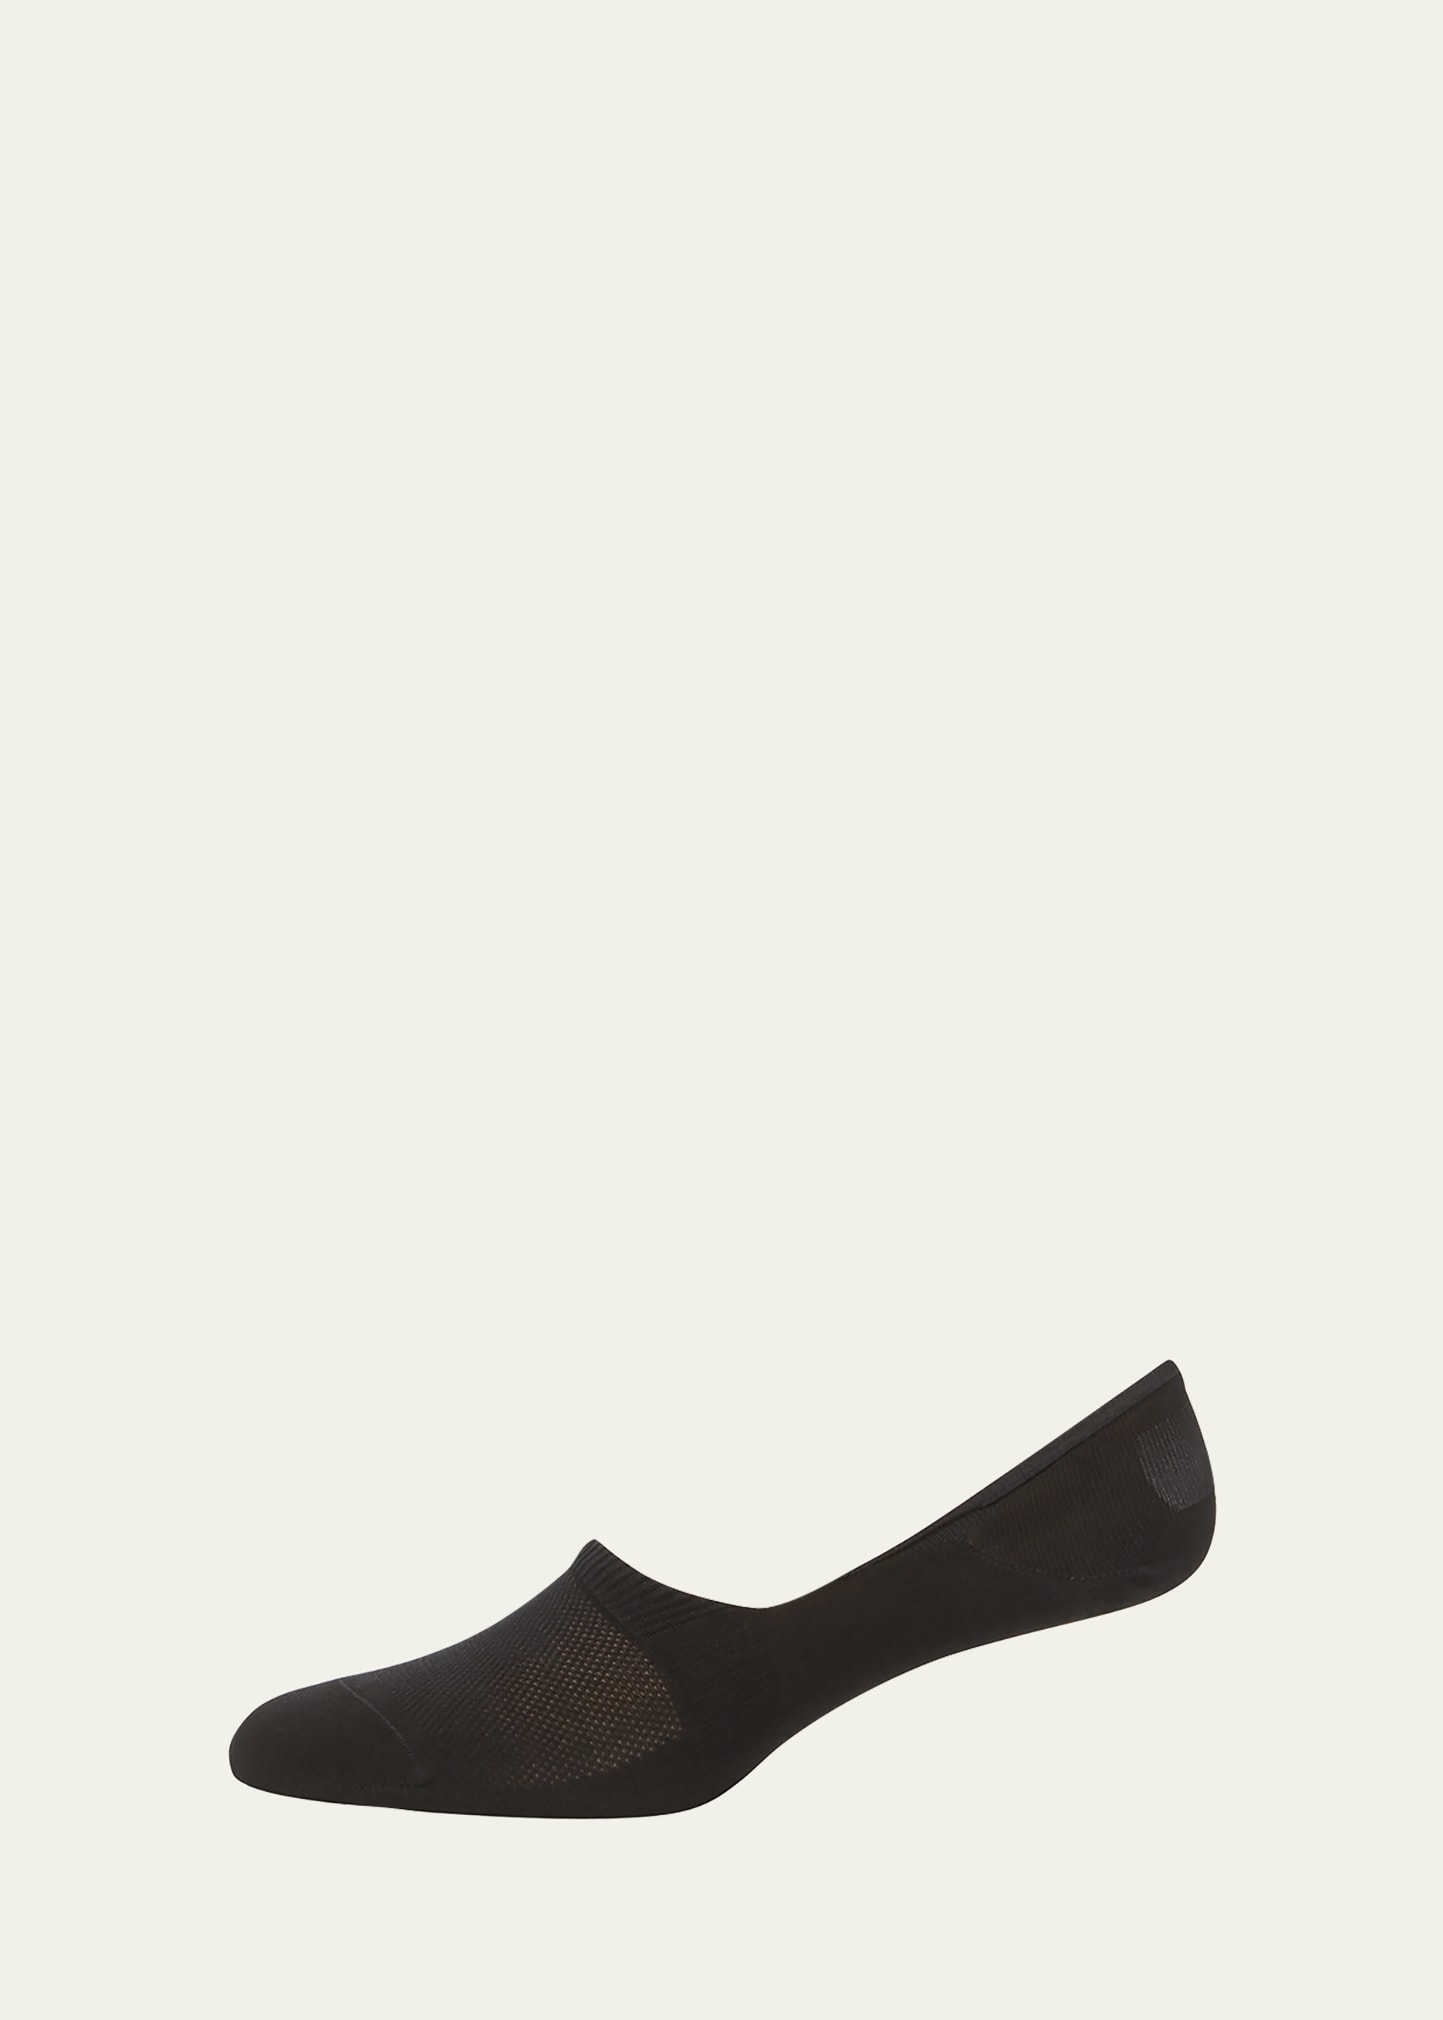 Pantherella Footlet Shoe Liner In Khaki